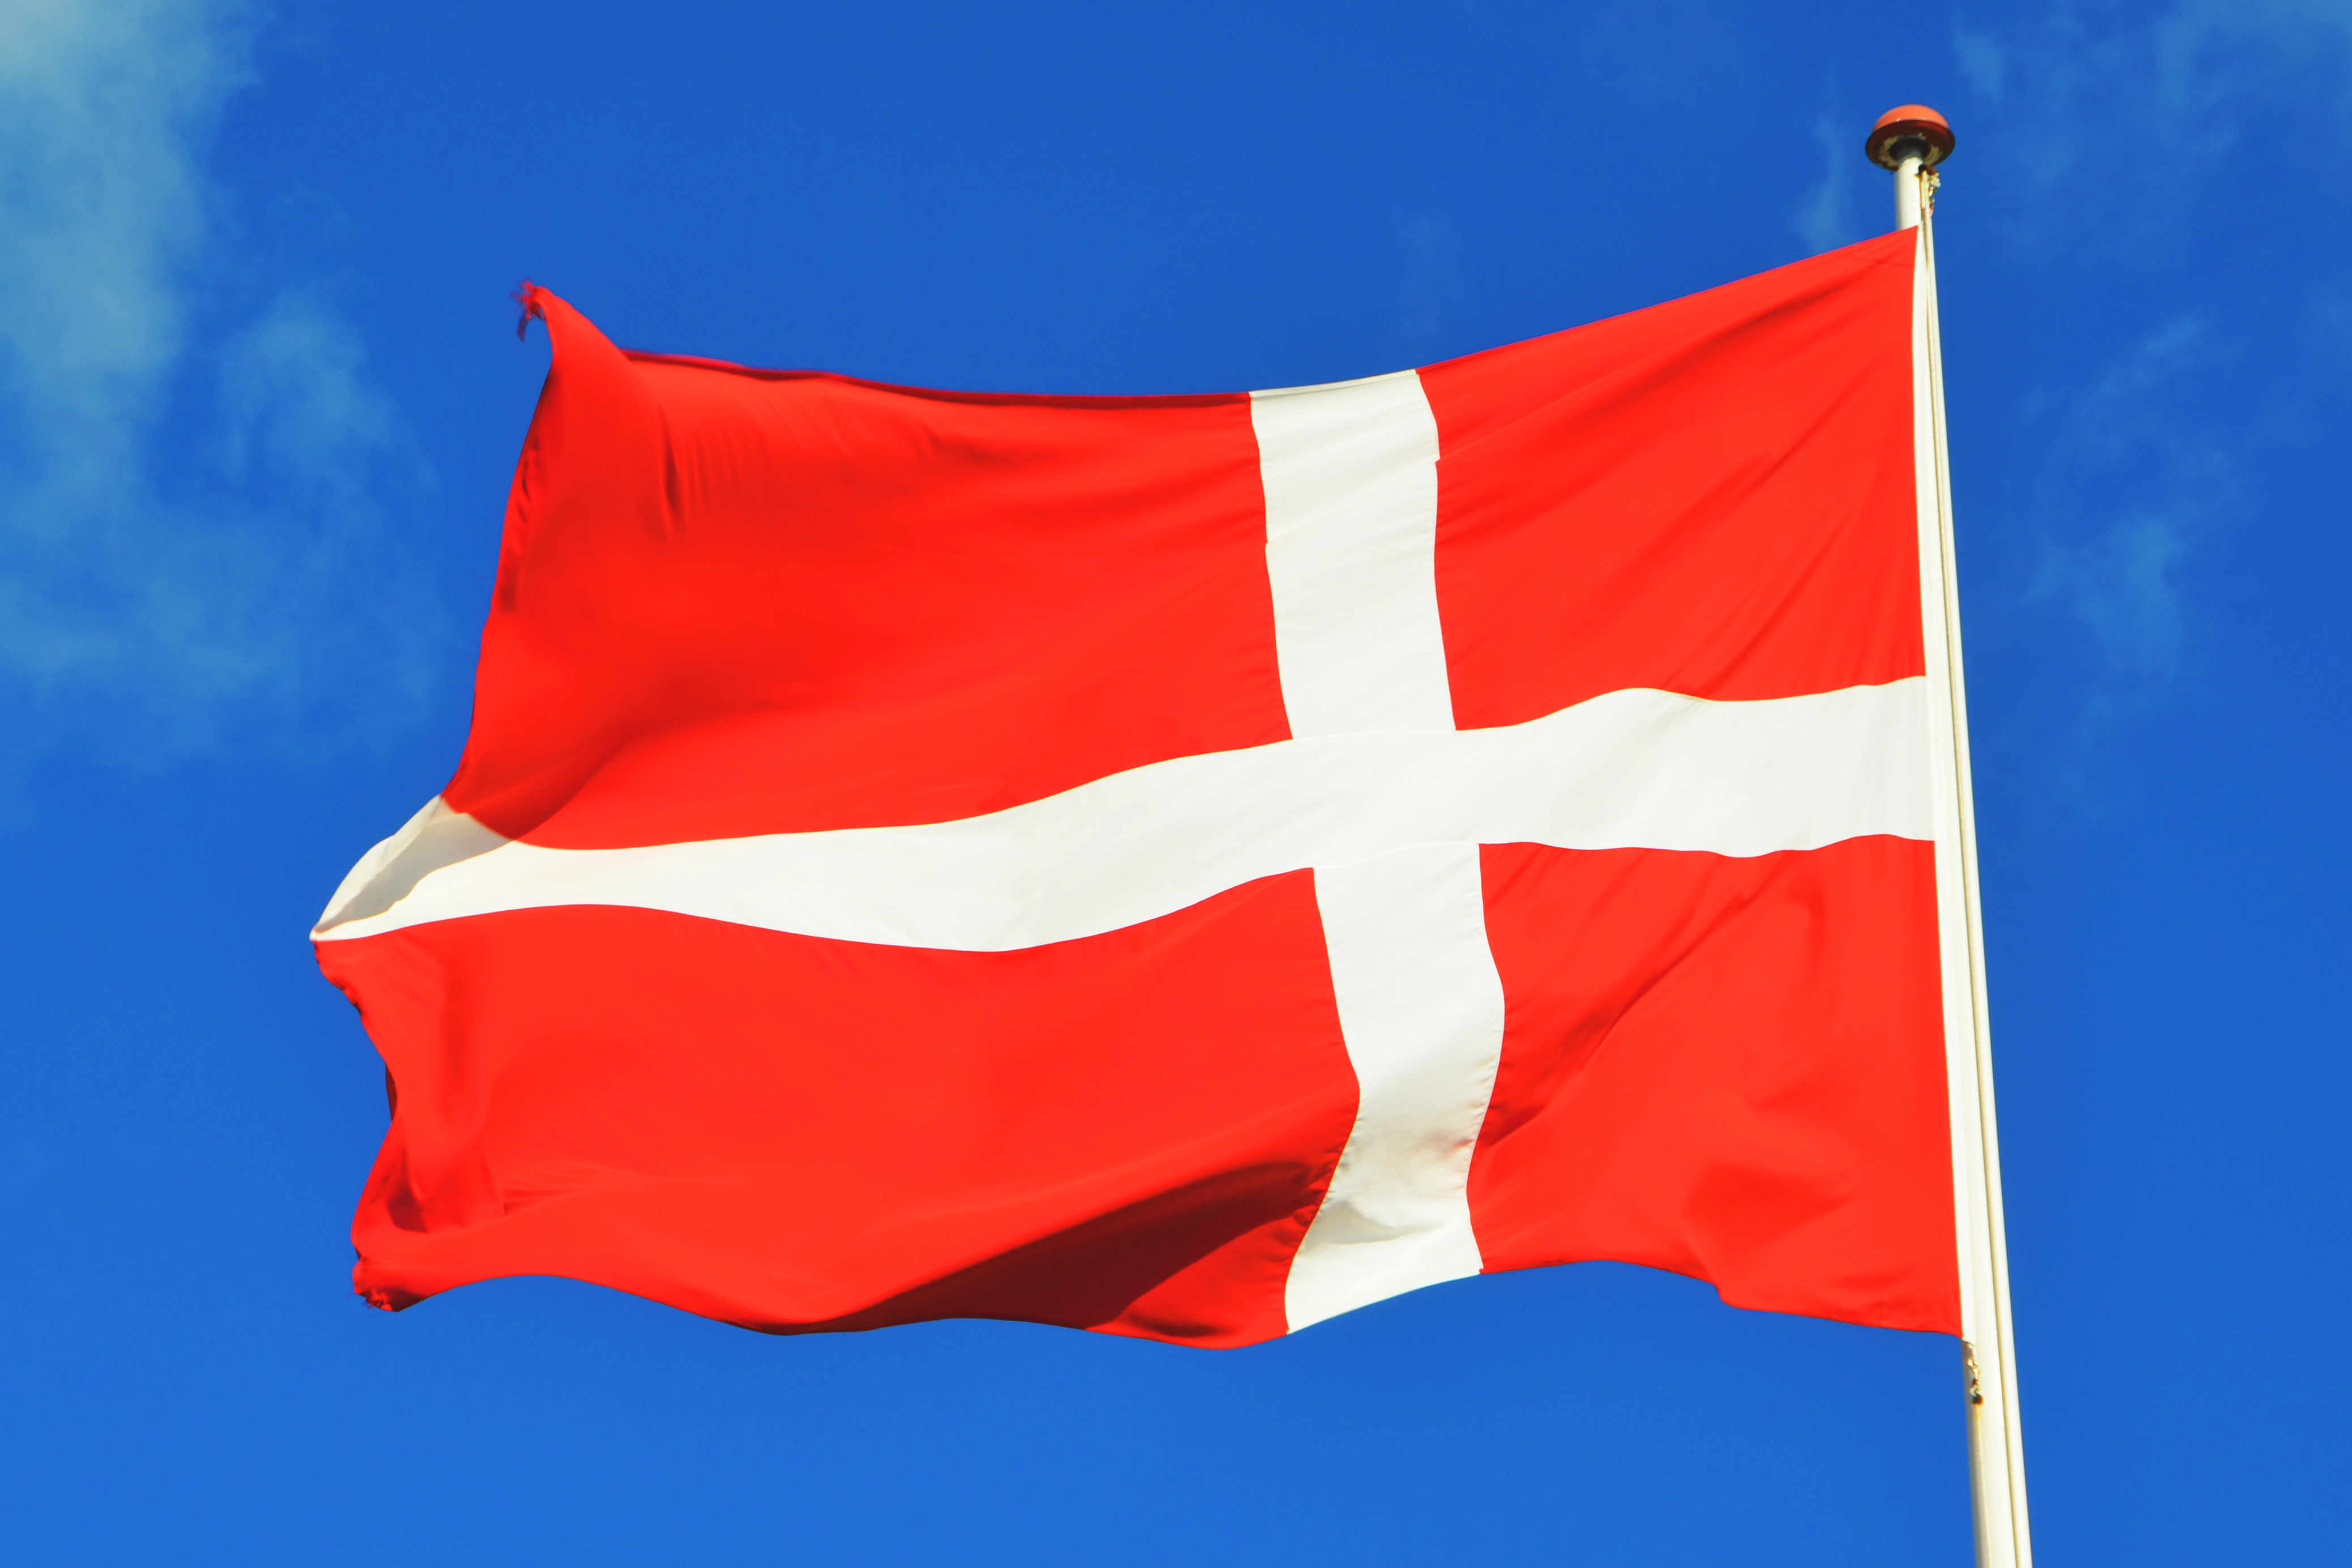 Danimarka da sünnetin yasaklanması için imza toplandı